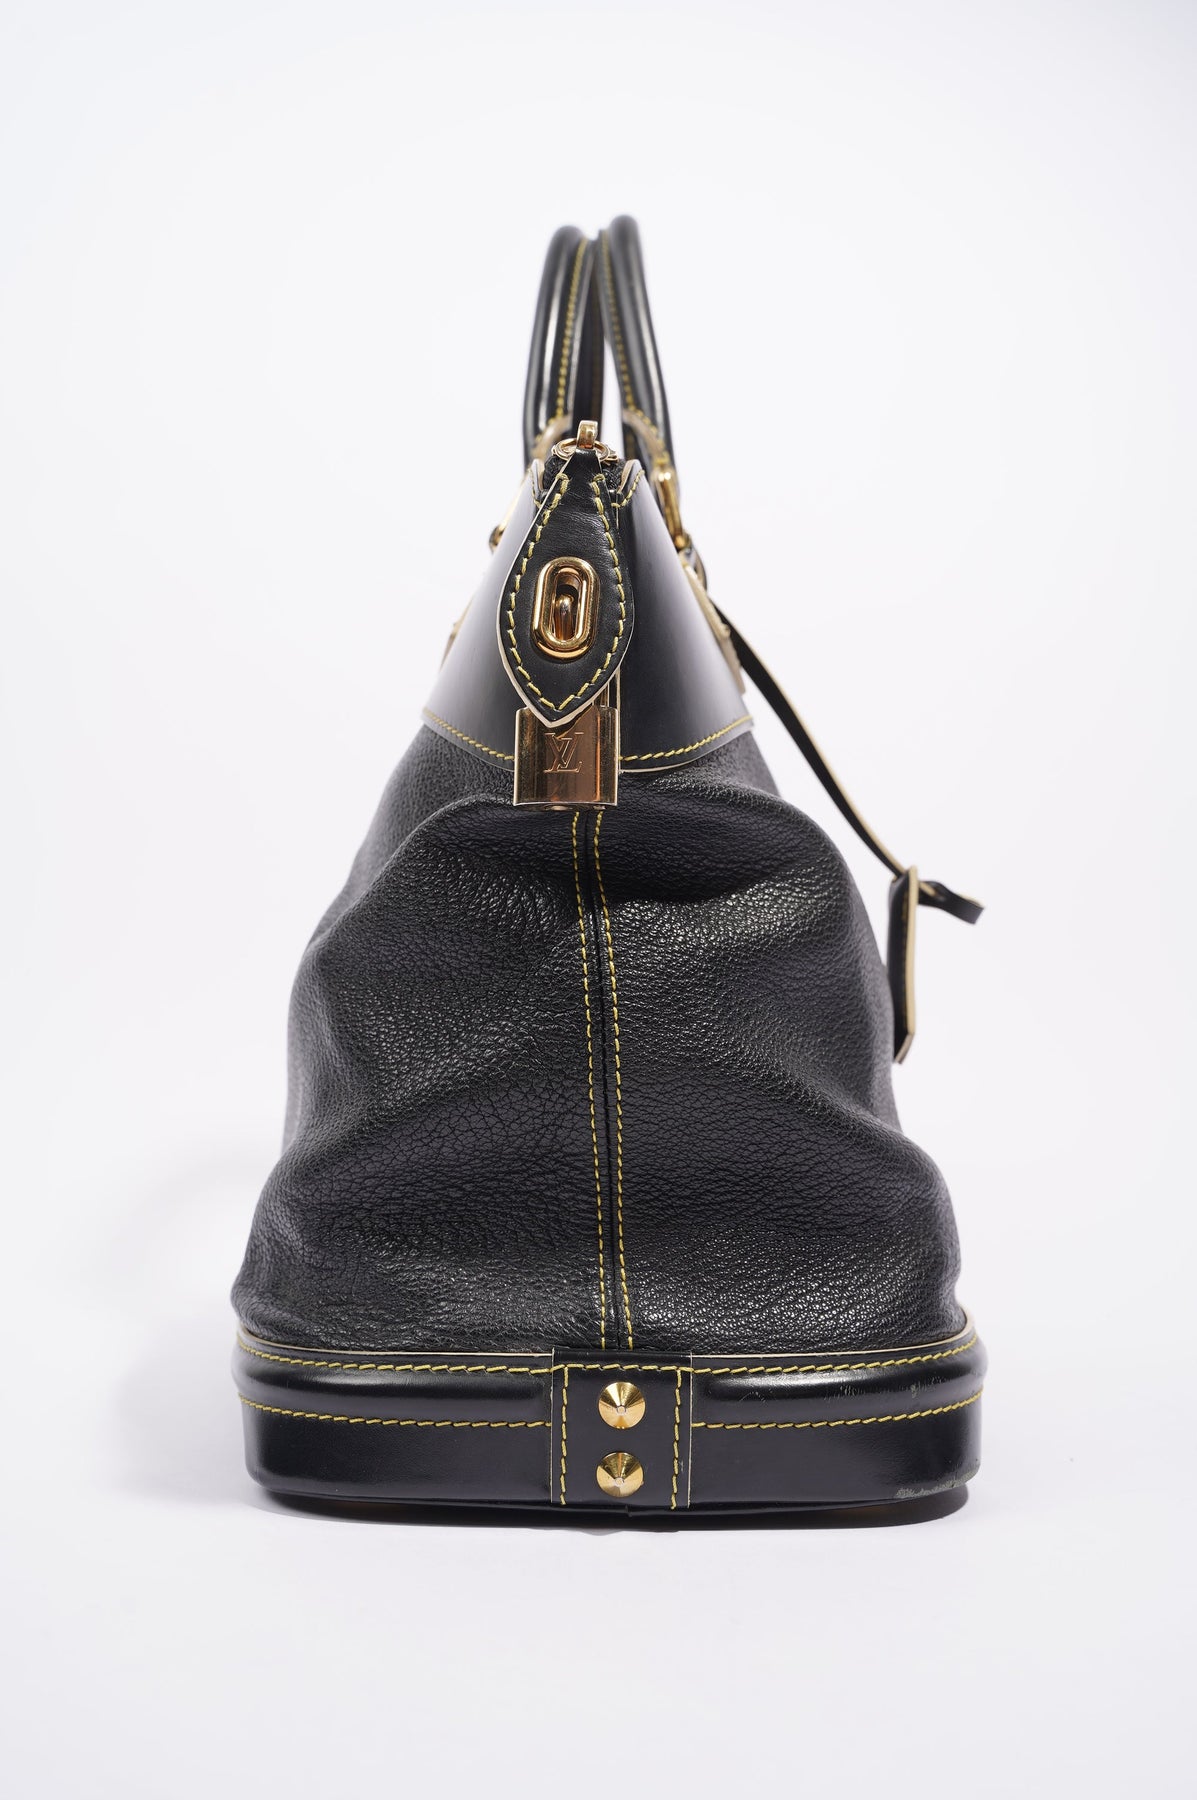 Louis Vuitton Suhali Lockit PM Handbag Black leather. USED ONCE